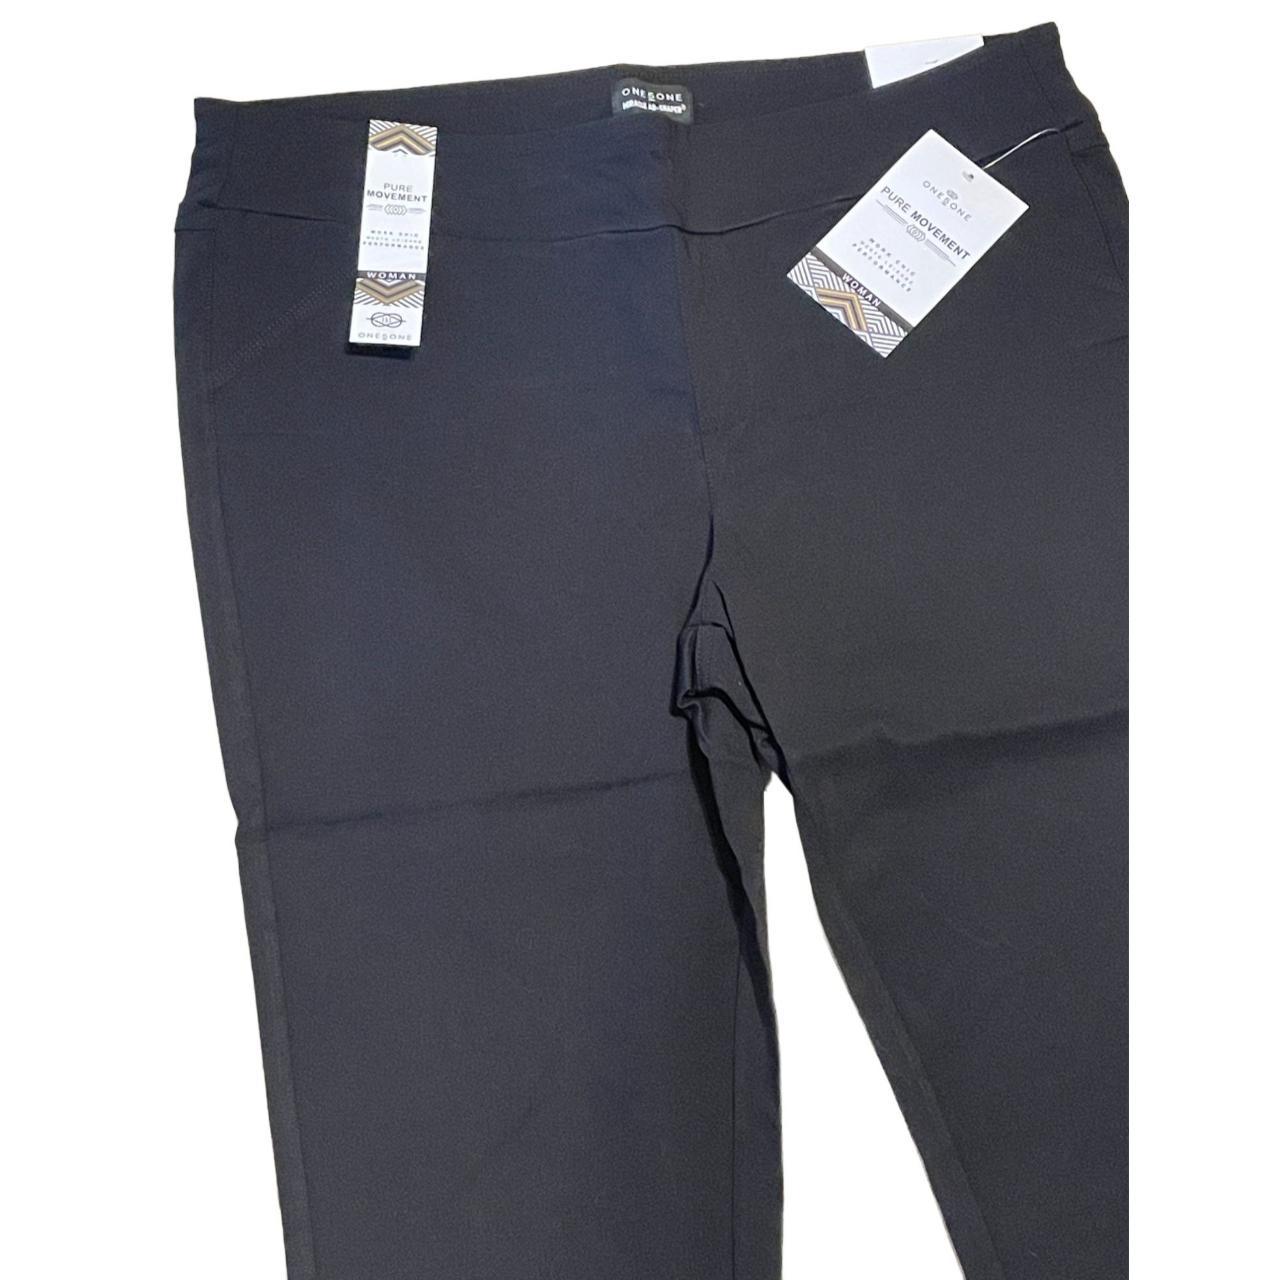 Stretch 3X black capri pants Features: •... - Depop